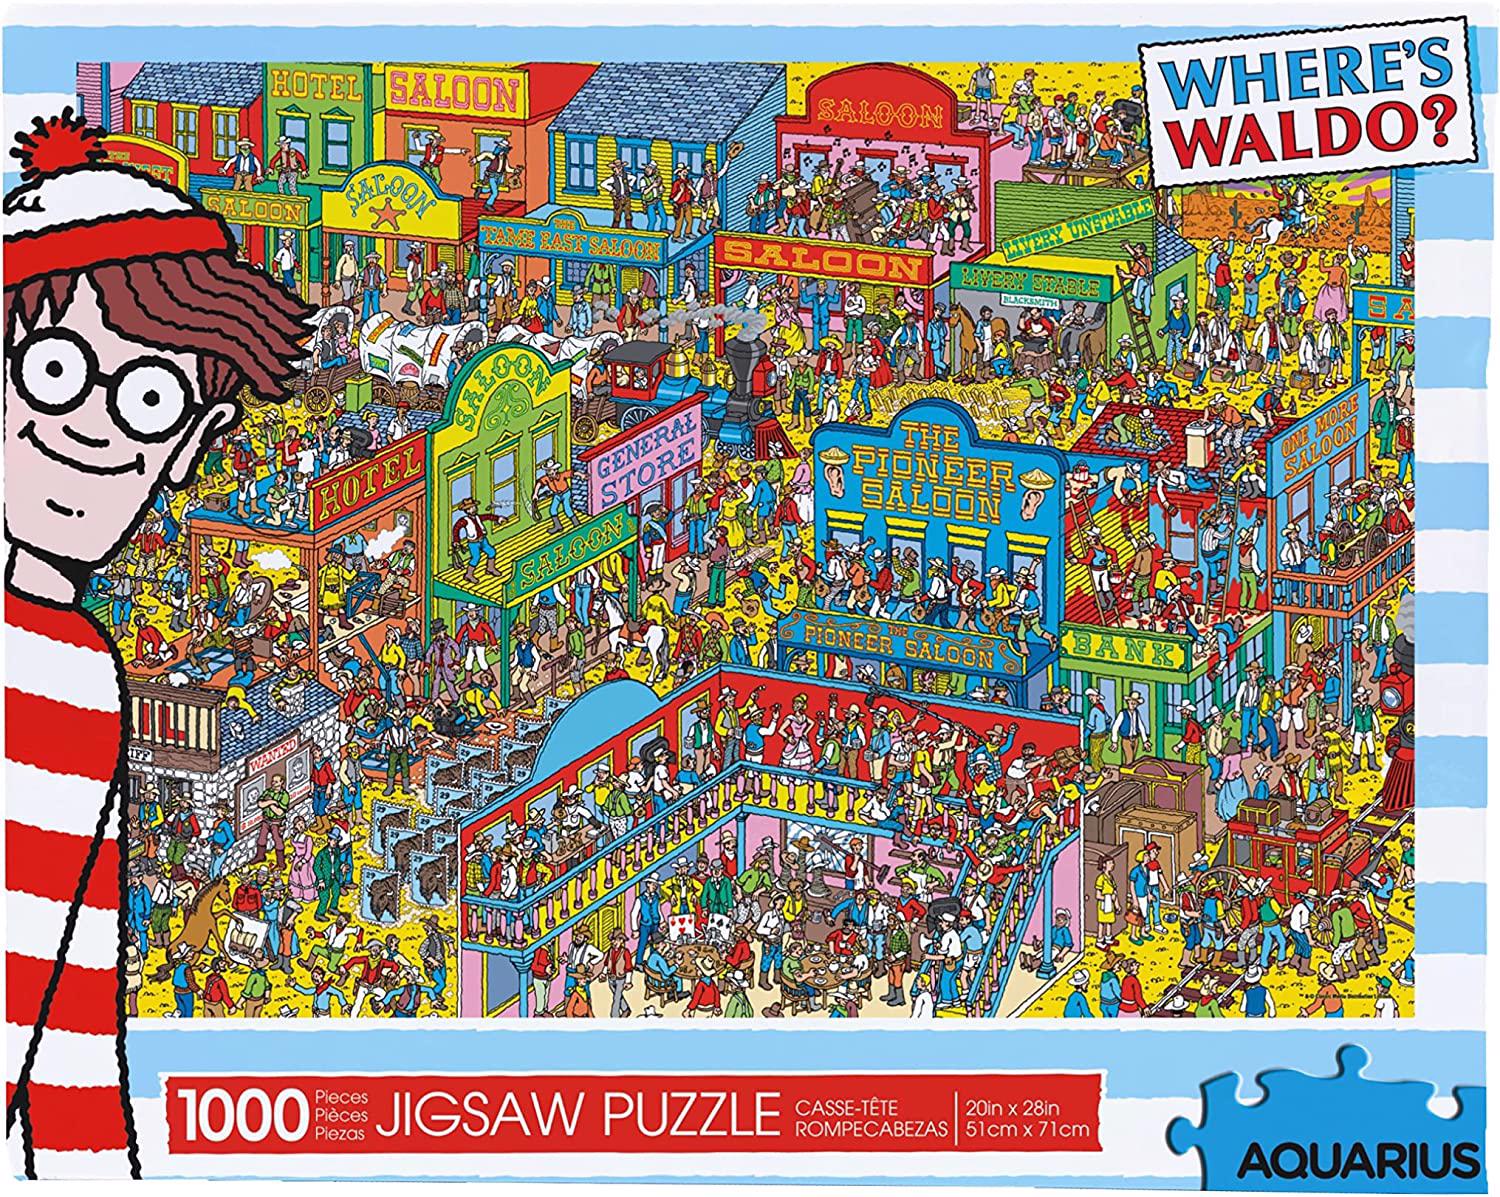 Puzzle Hol van Waldo?